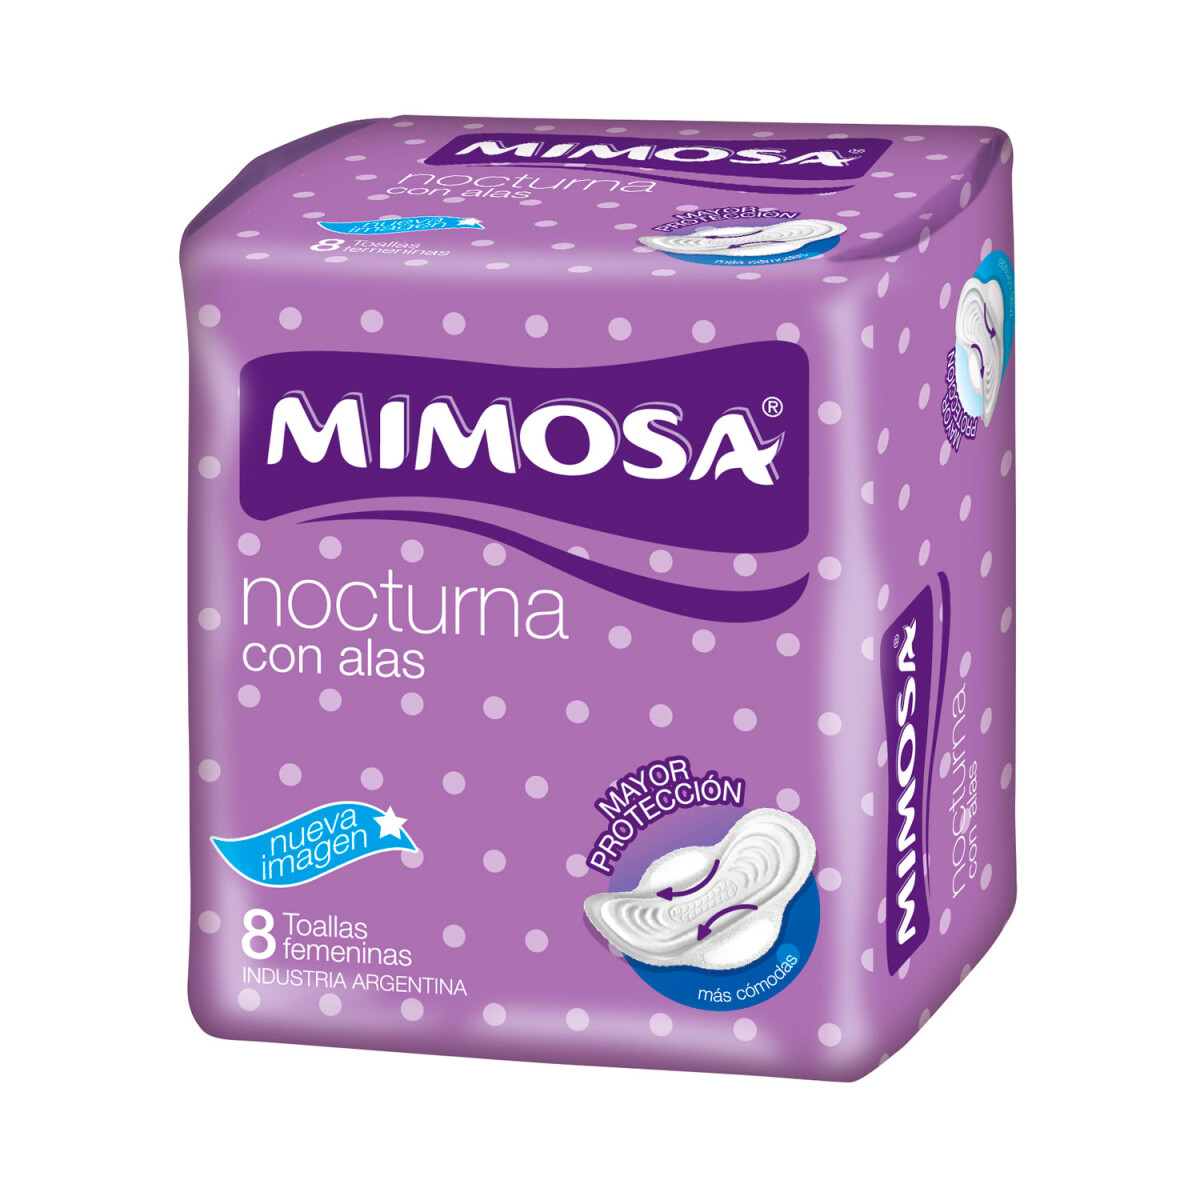 Toalla Femenina Mimosa Nocturna - C/Alas X8 